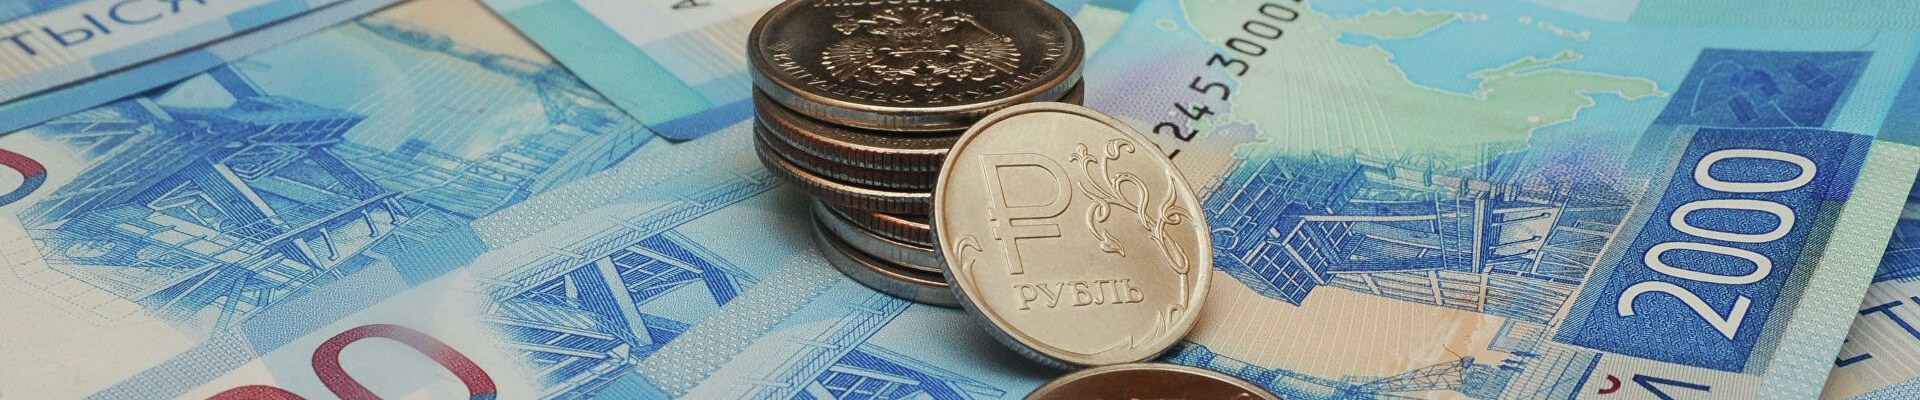 Между застройщиками и банковскими организациями заключено кредитных договоров на сумму более 4 триллионов рублей